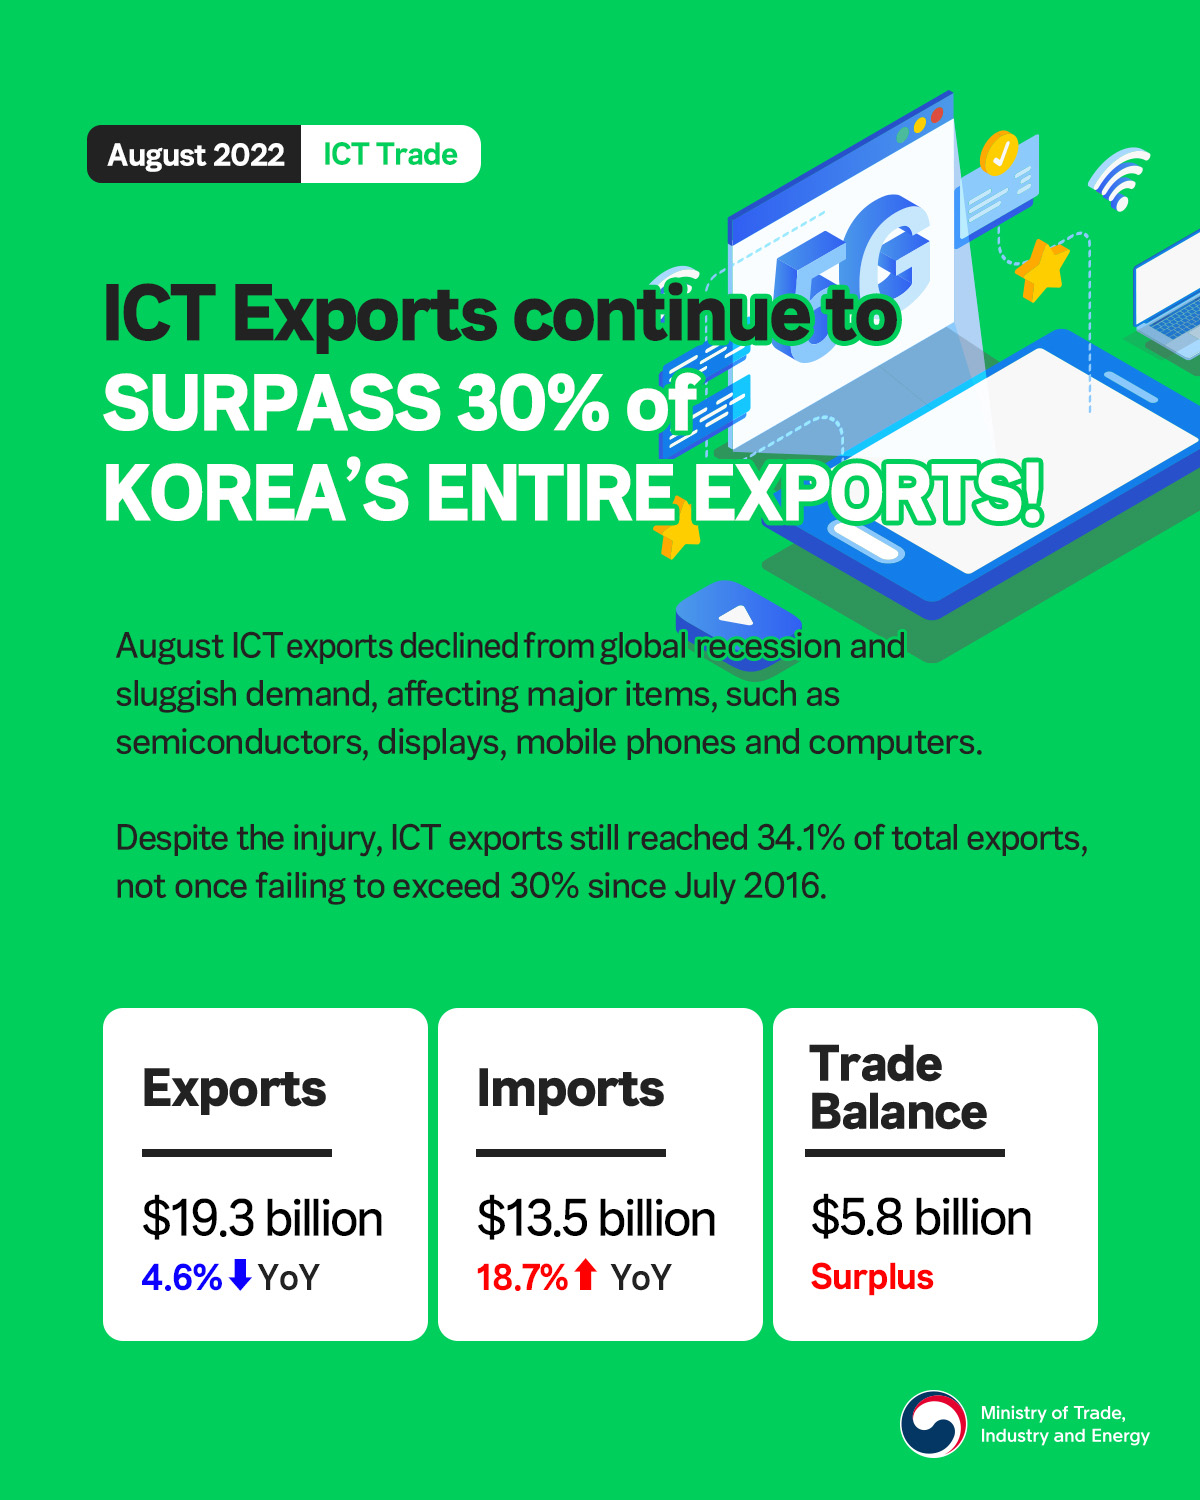 Korea's ICT exports decline 4.6% in August